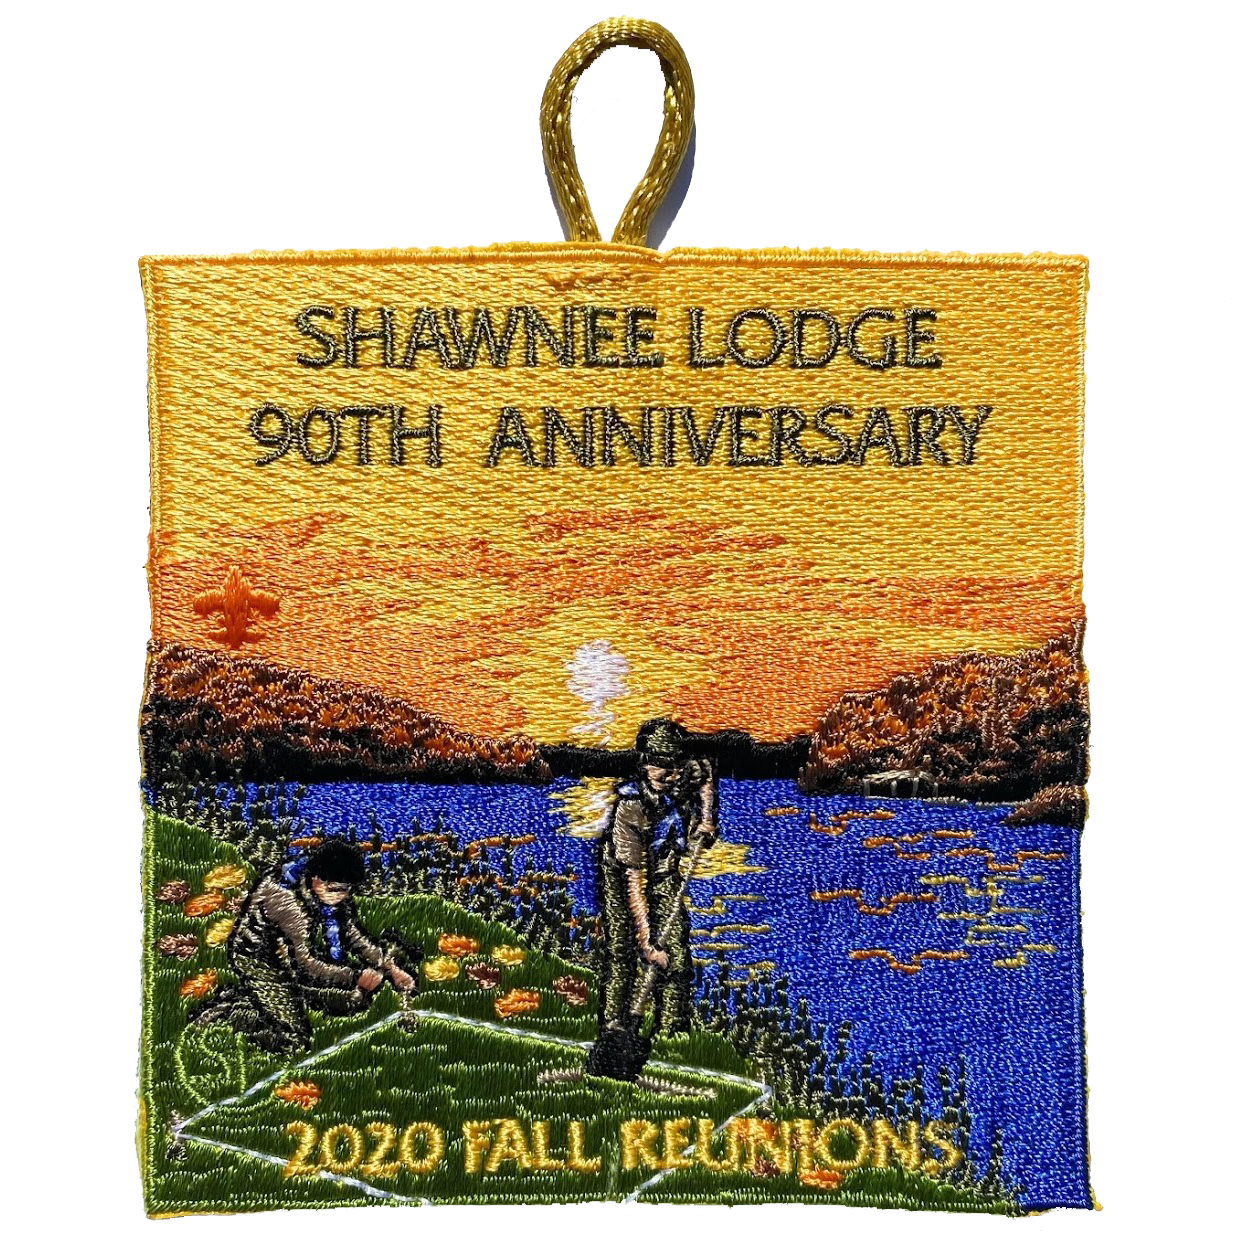 Emblem 2020 Fall Reunion 90th Anniversary Shawnee Lodge